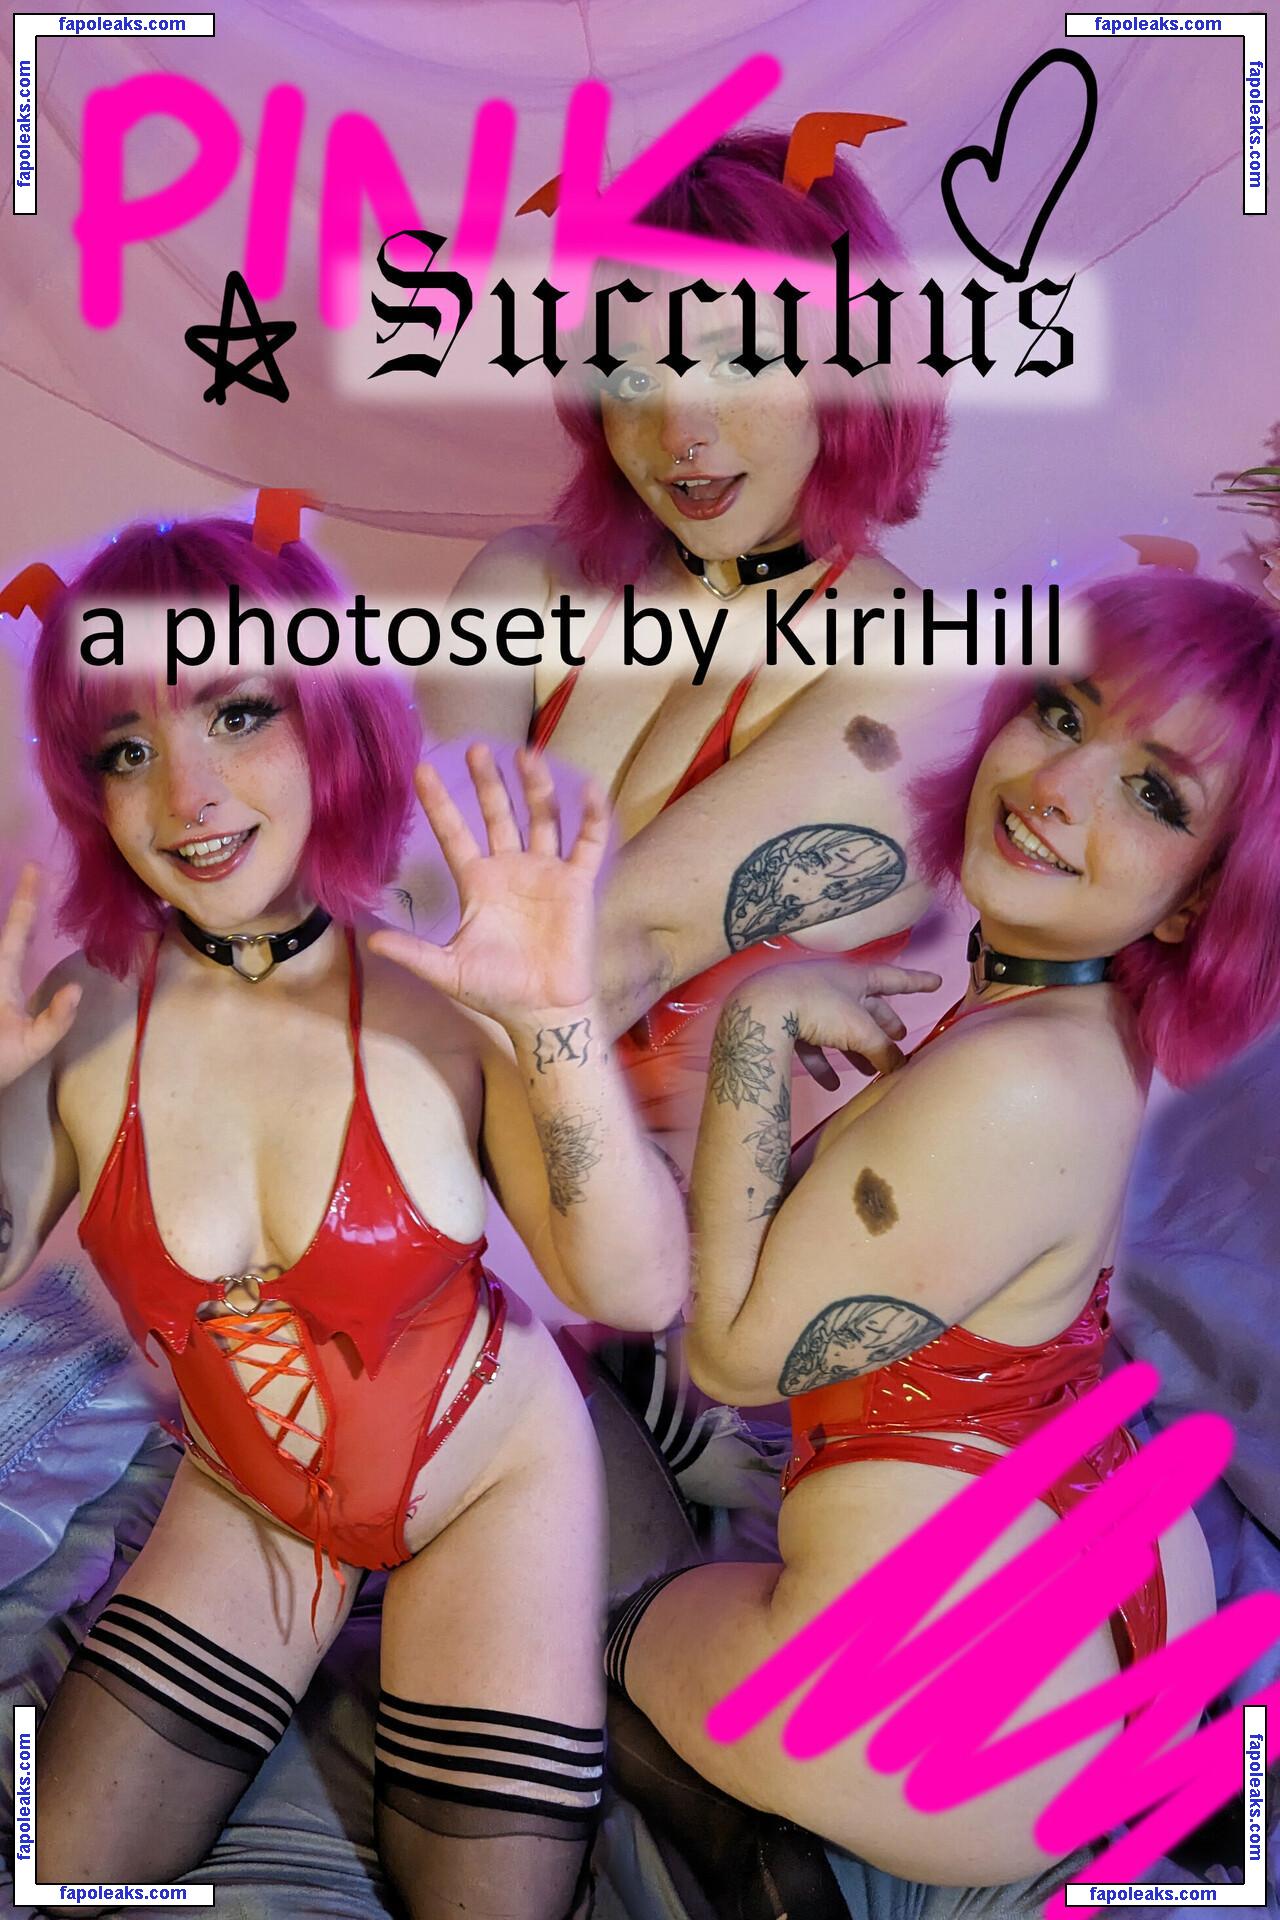 Kirihill / Sunriserevelion / kirrihillwines nude photo #0069 from OnlyFans